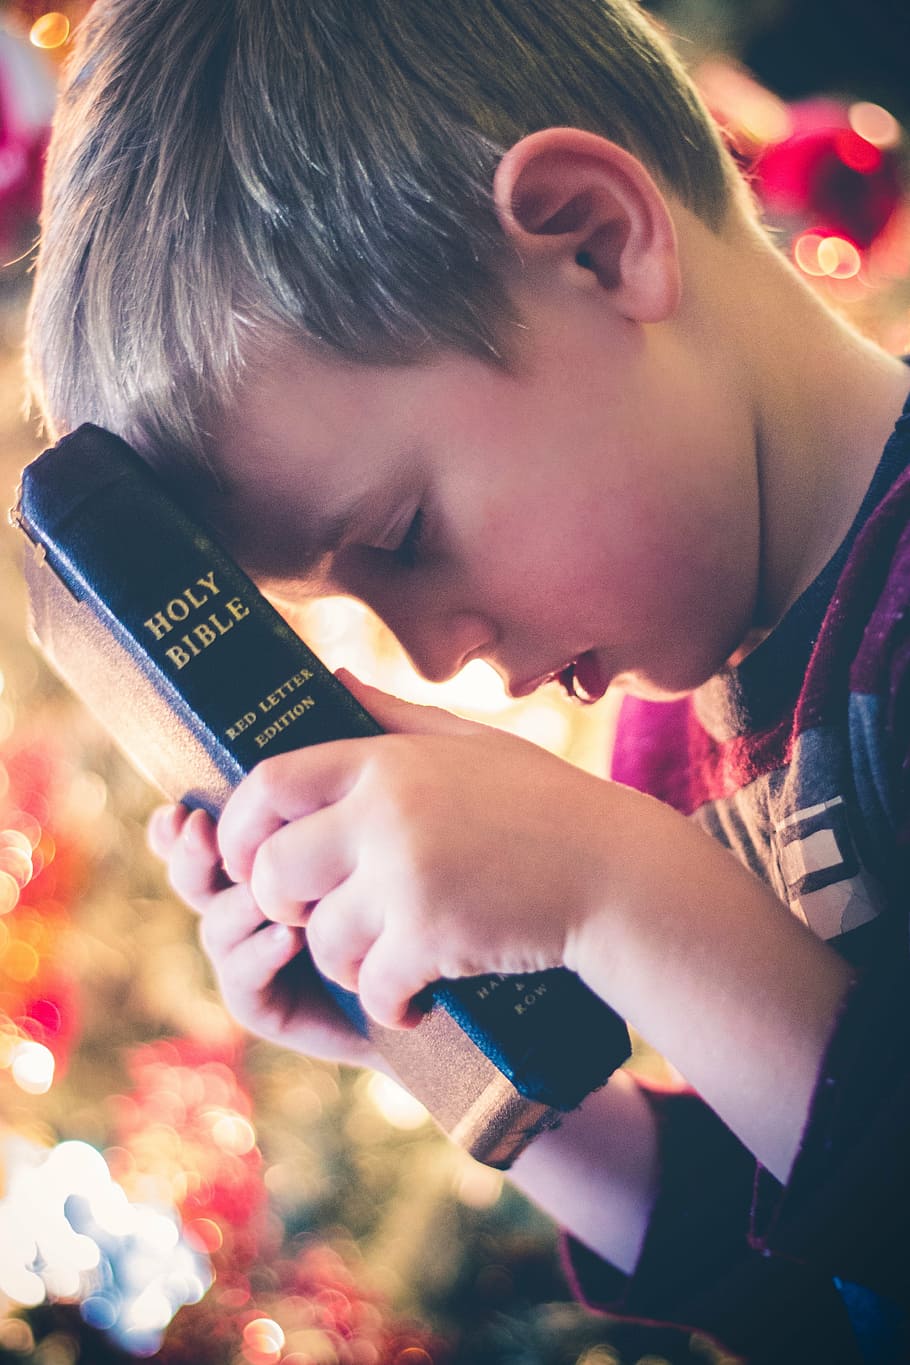 chico, sosteniendo, santa, biblia, libro, lectura, religioso, mano, bokeh, niño